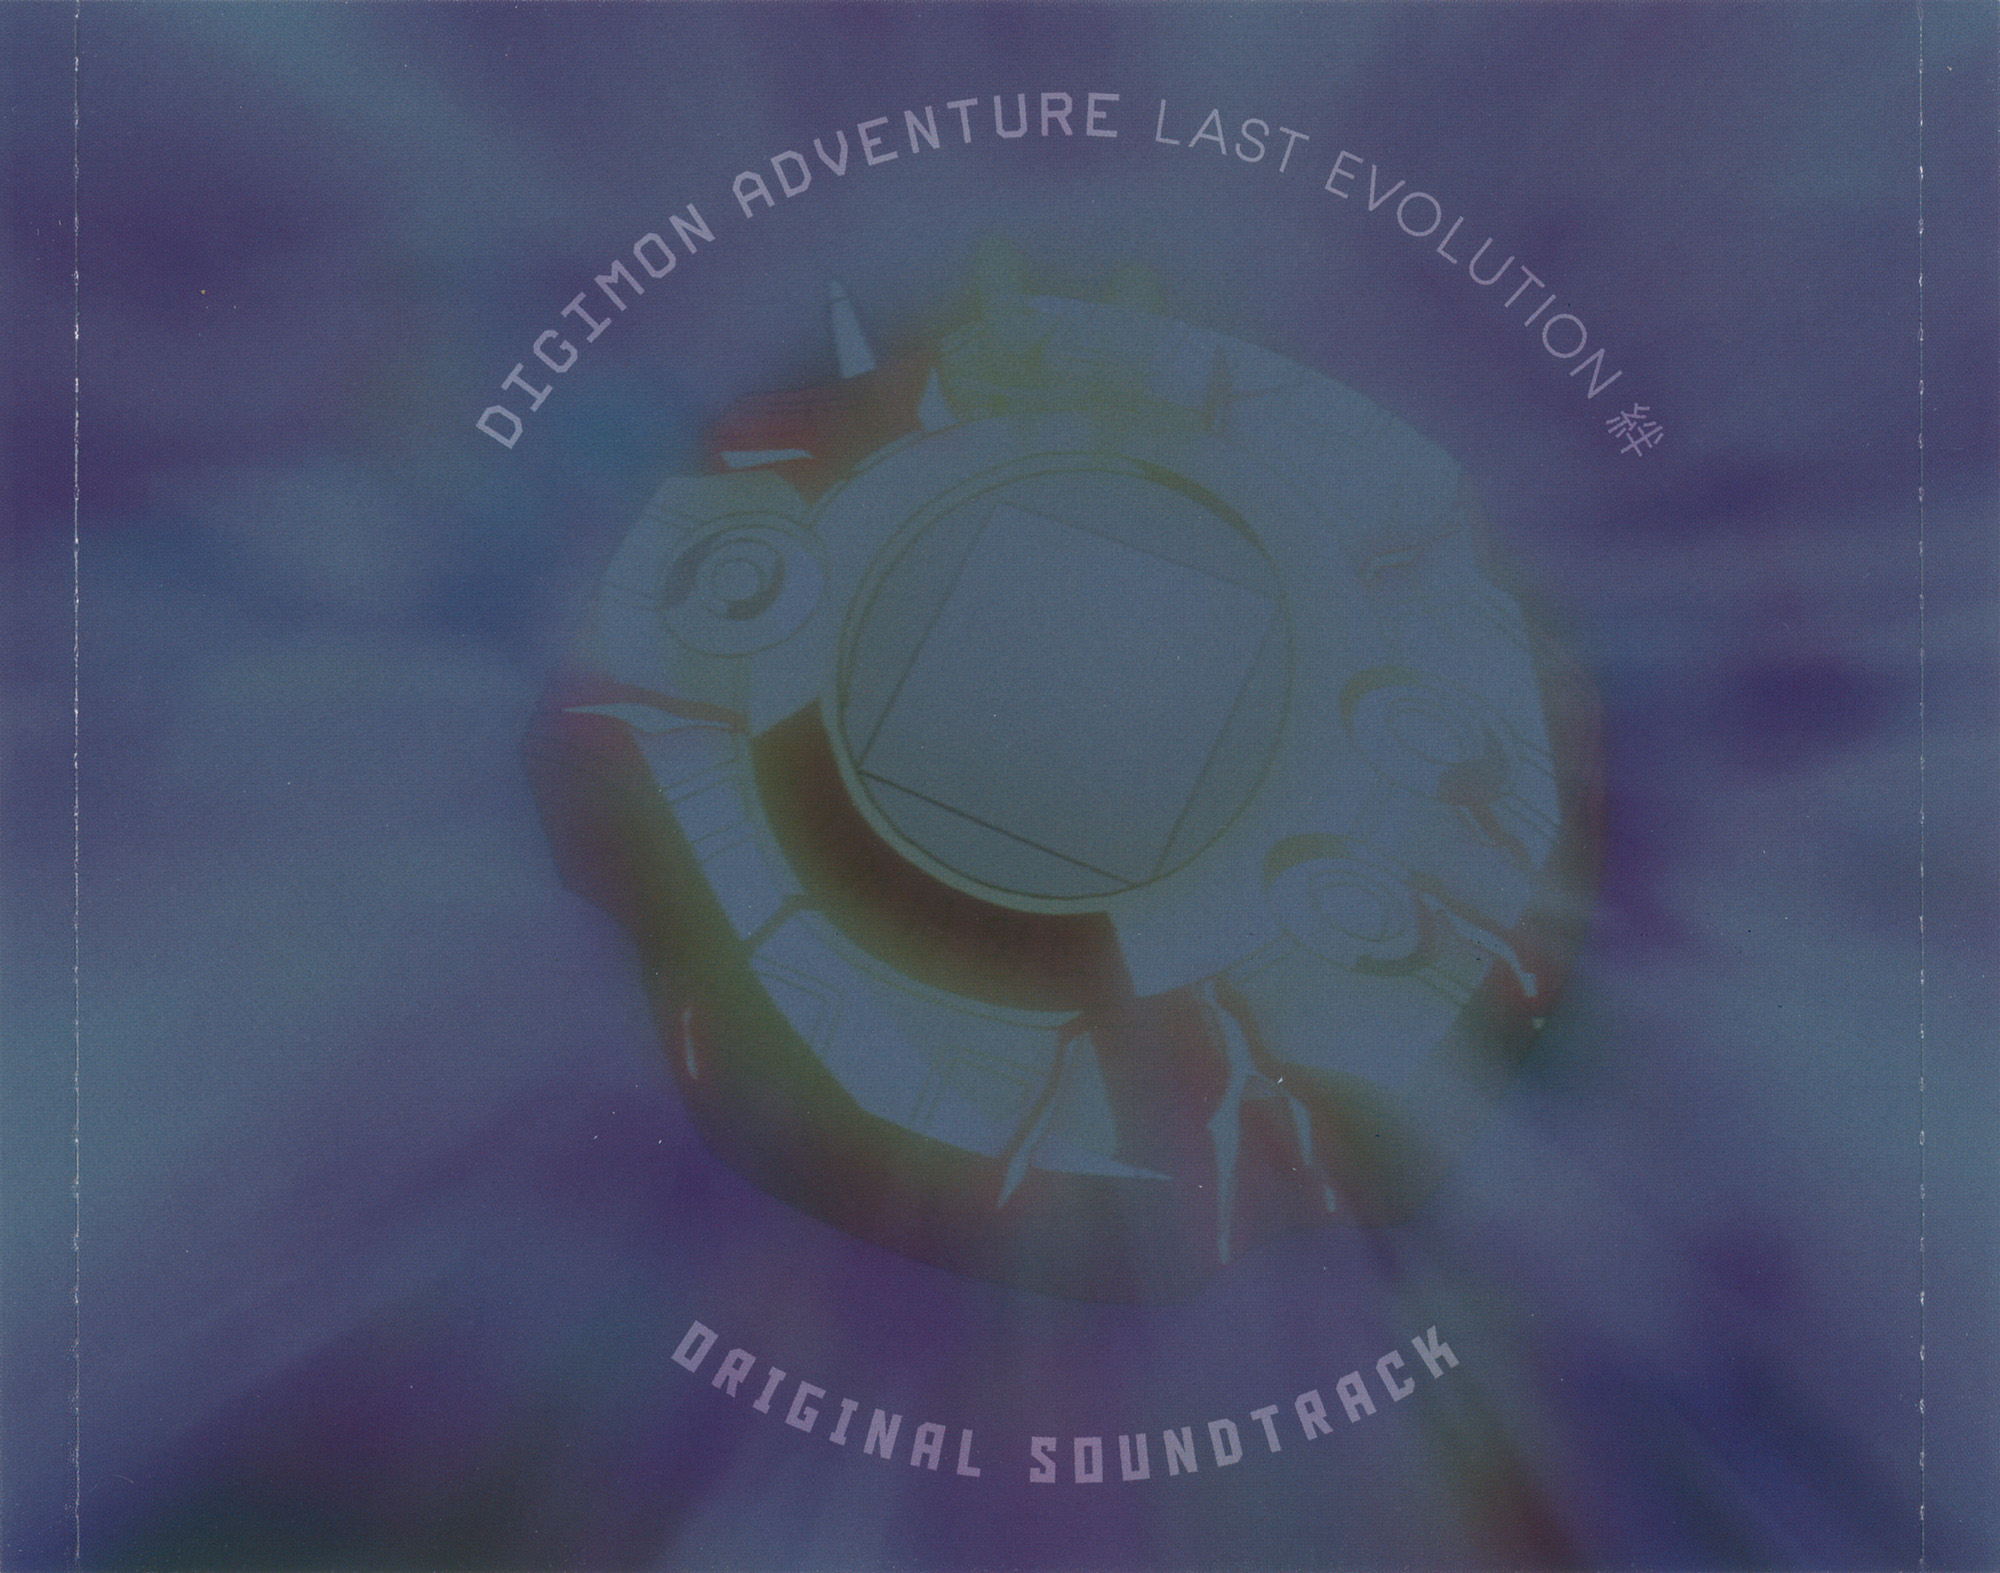 Digimon Adventure Last Evolution Kizuna Deluxe Edition Blu-ray CD Book